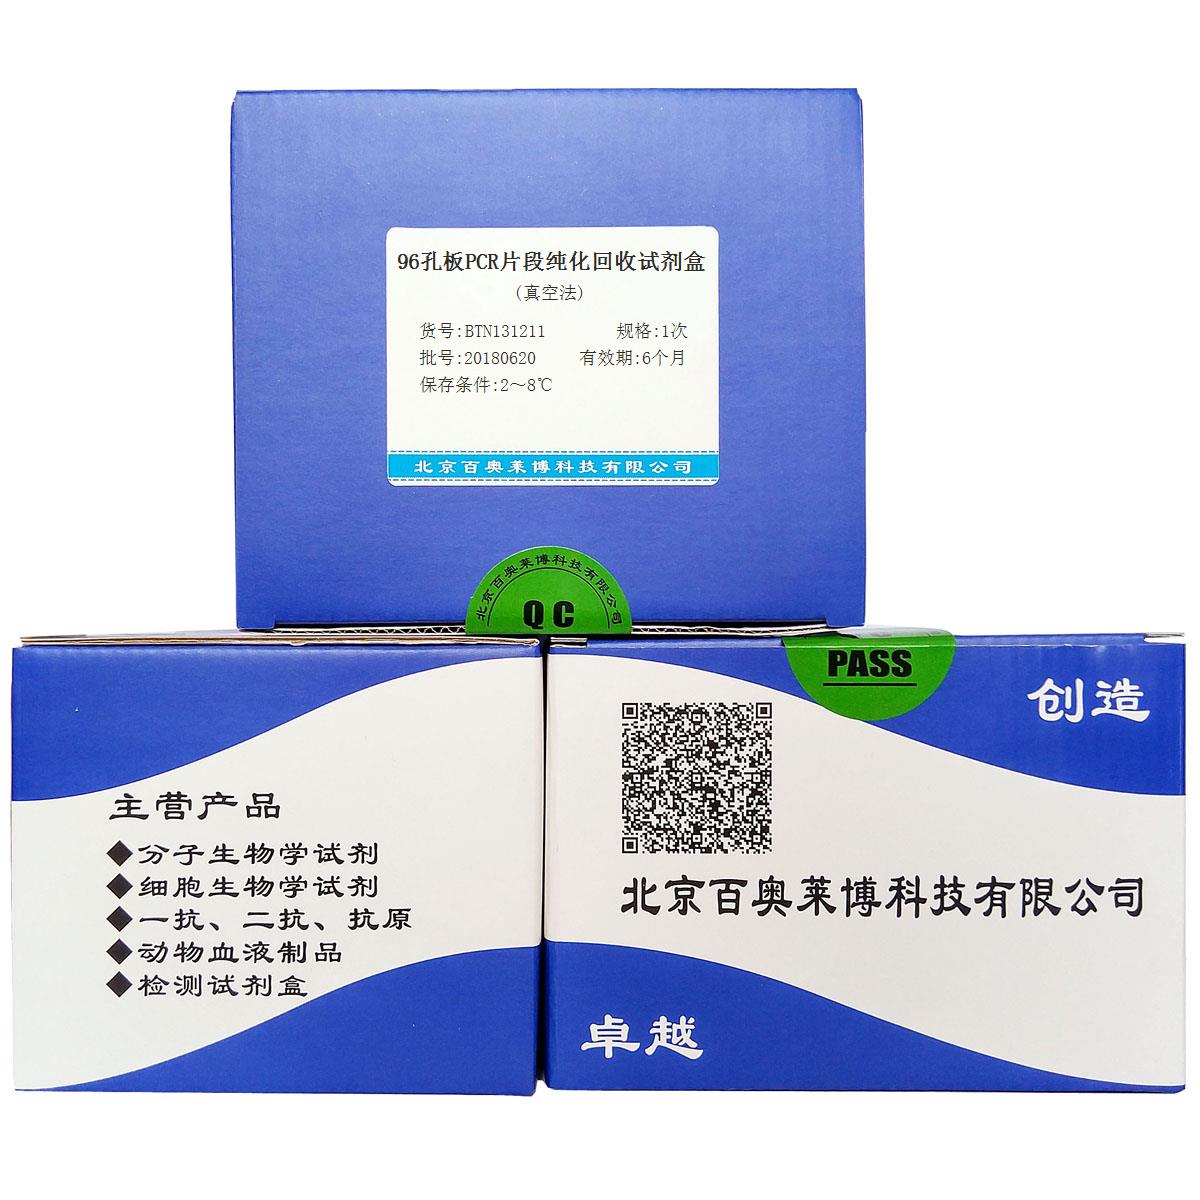 北京BTN131211型96孔板PCR片段纯化回收试剂盒(真空法)优惠促销